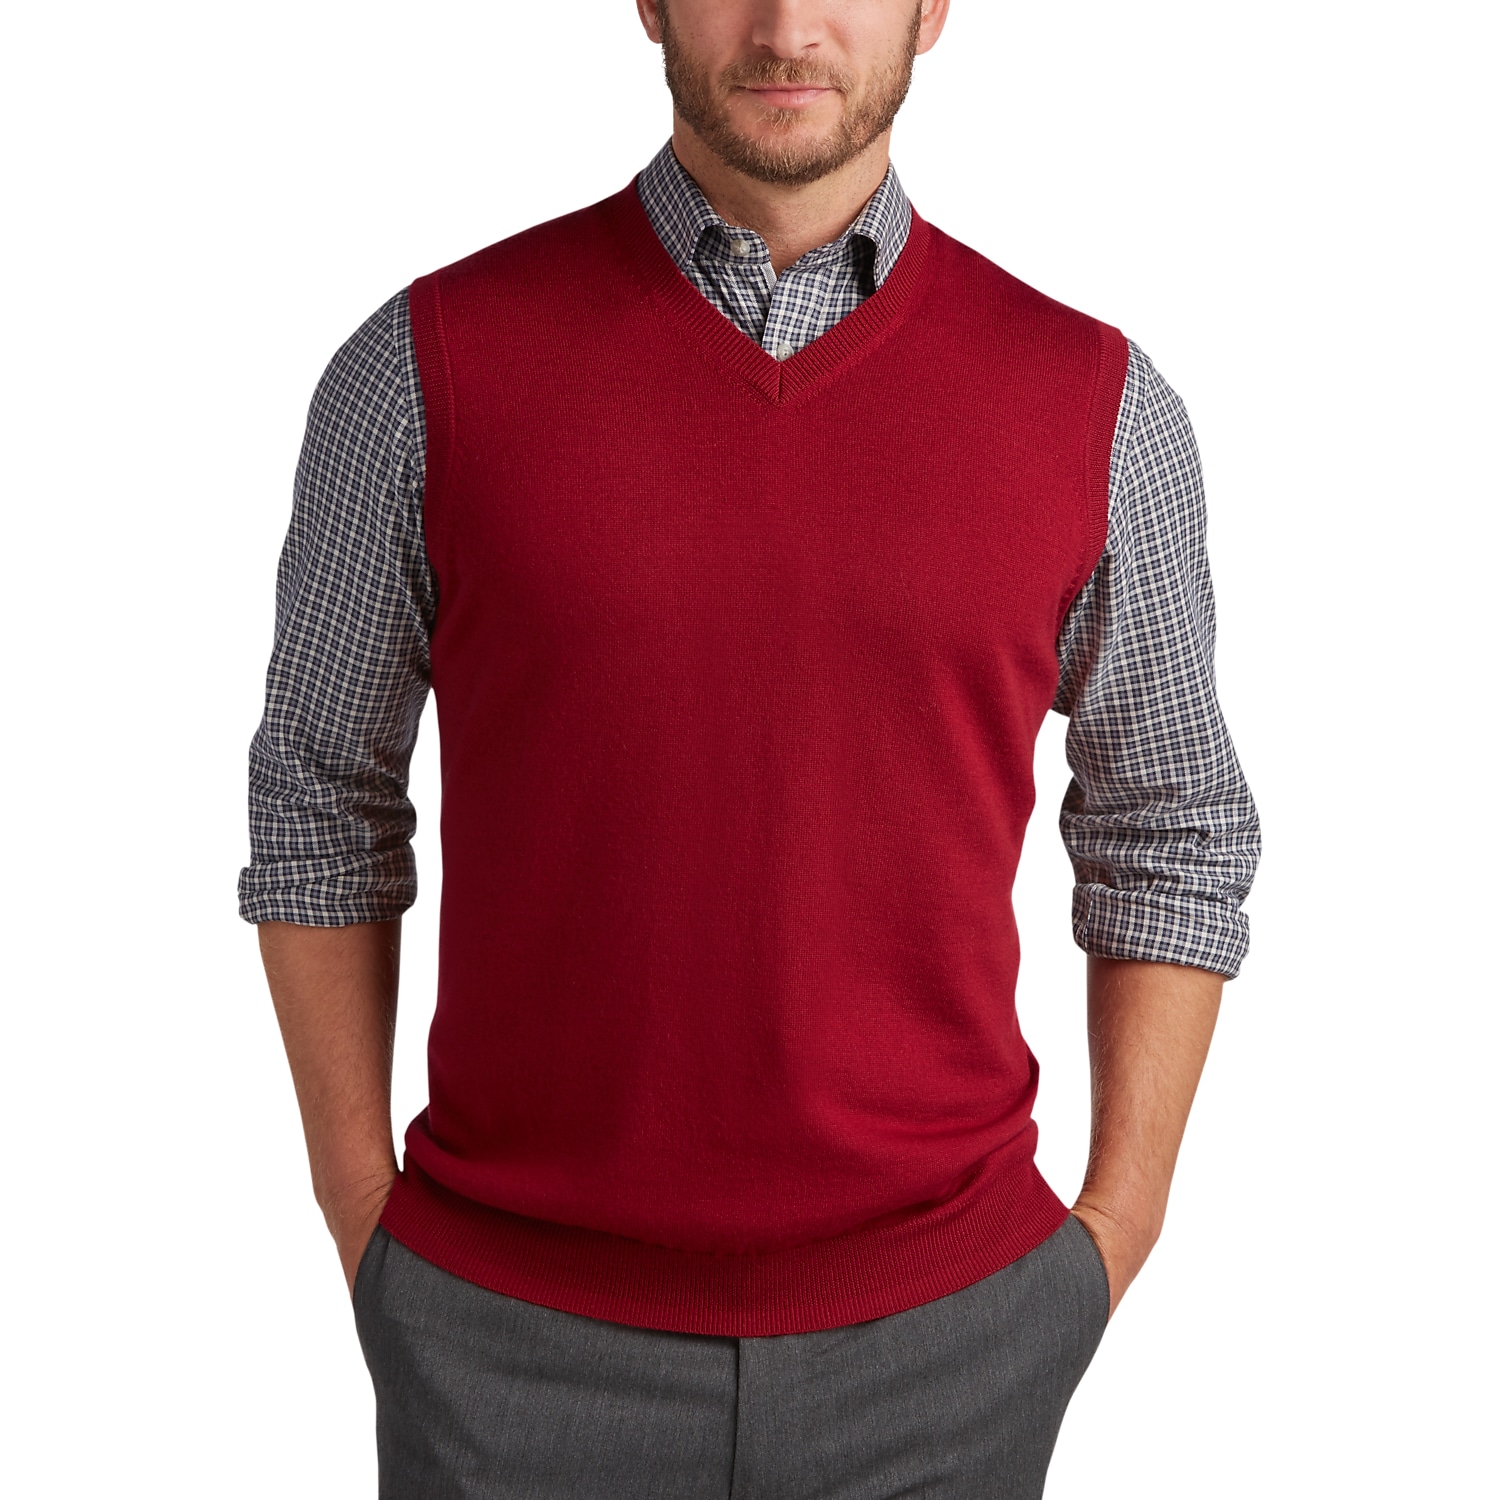 Sweater Vests - Men's Sweater Vests | Men's Wearhouse